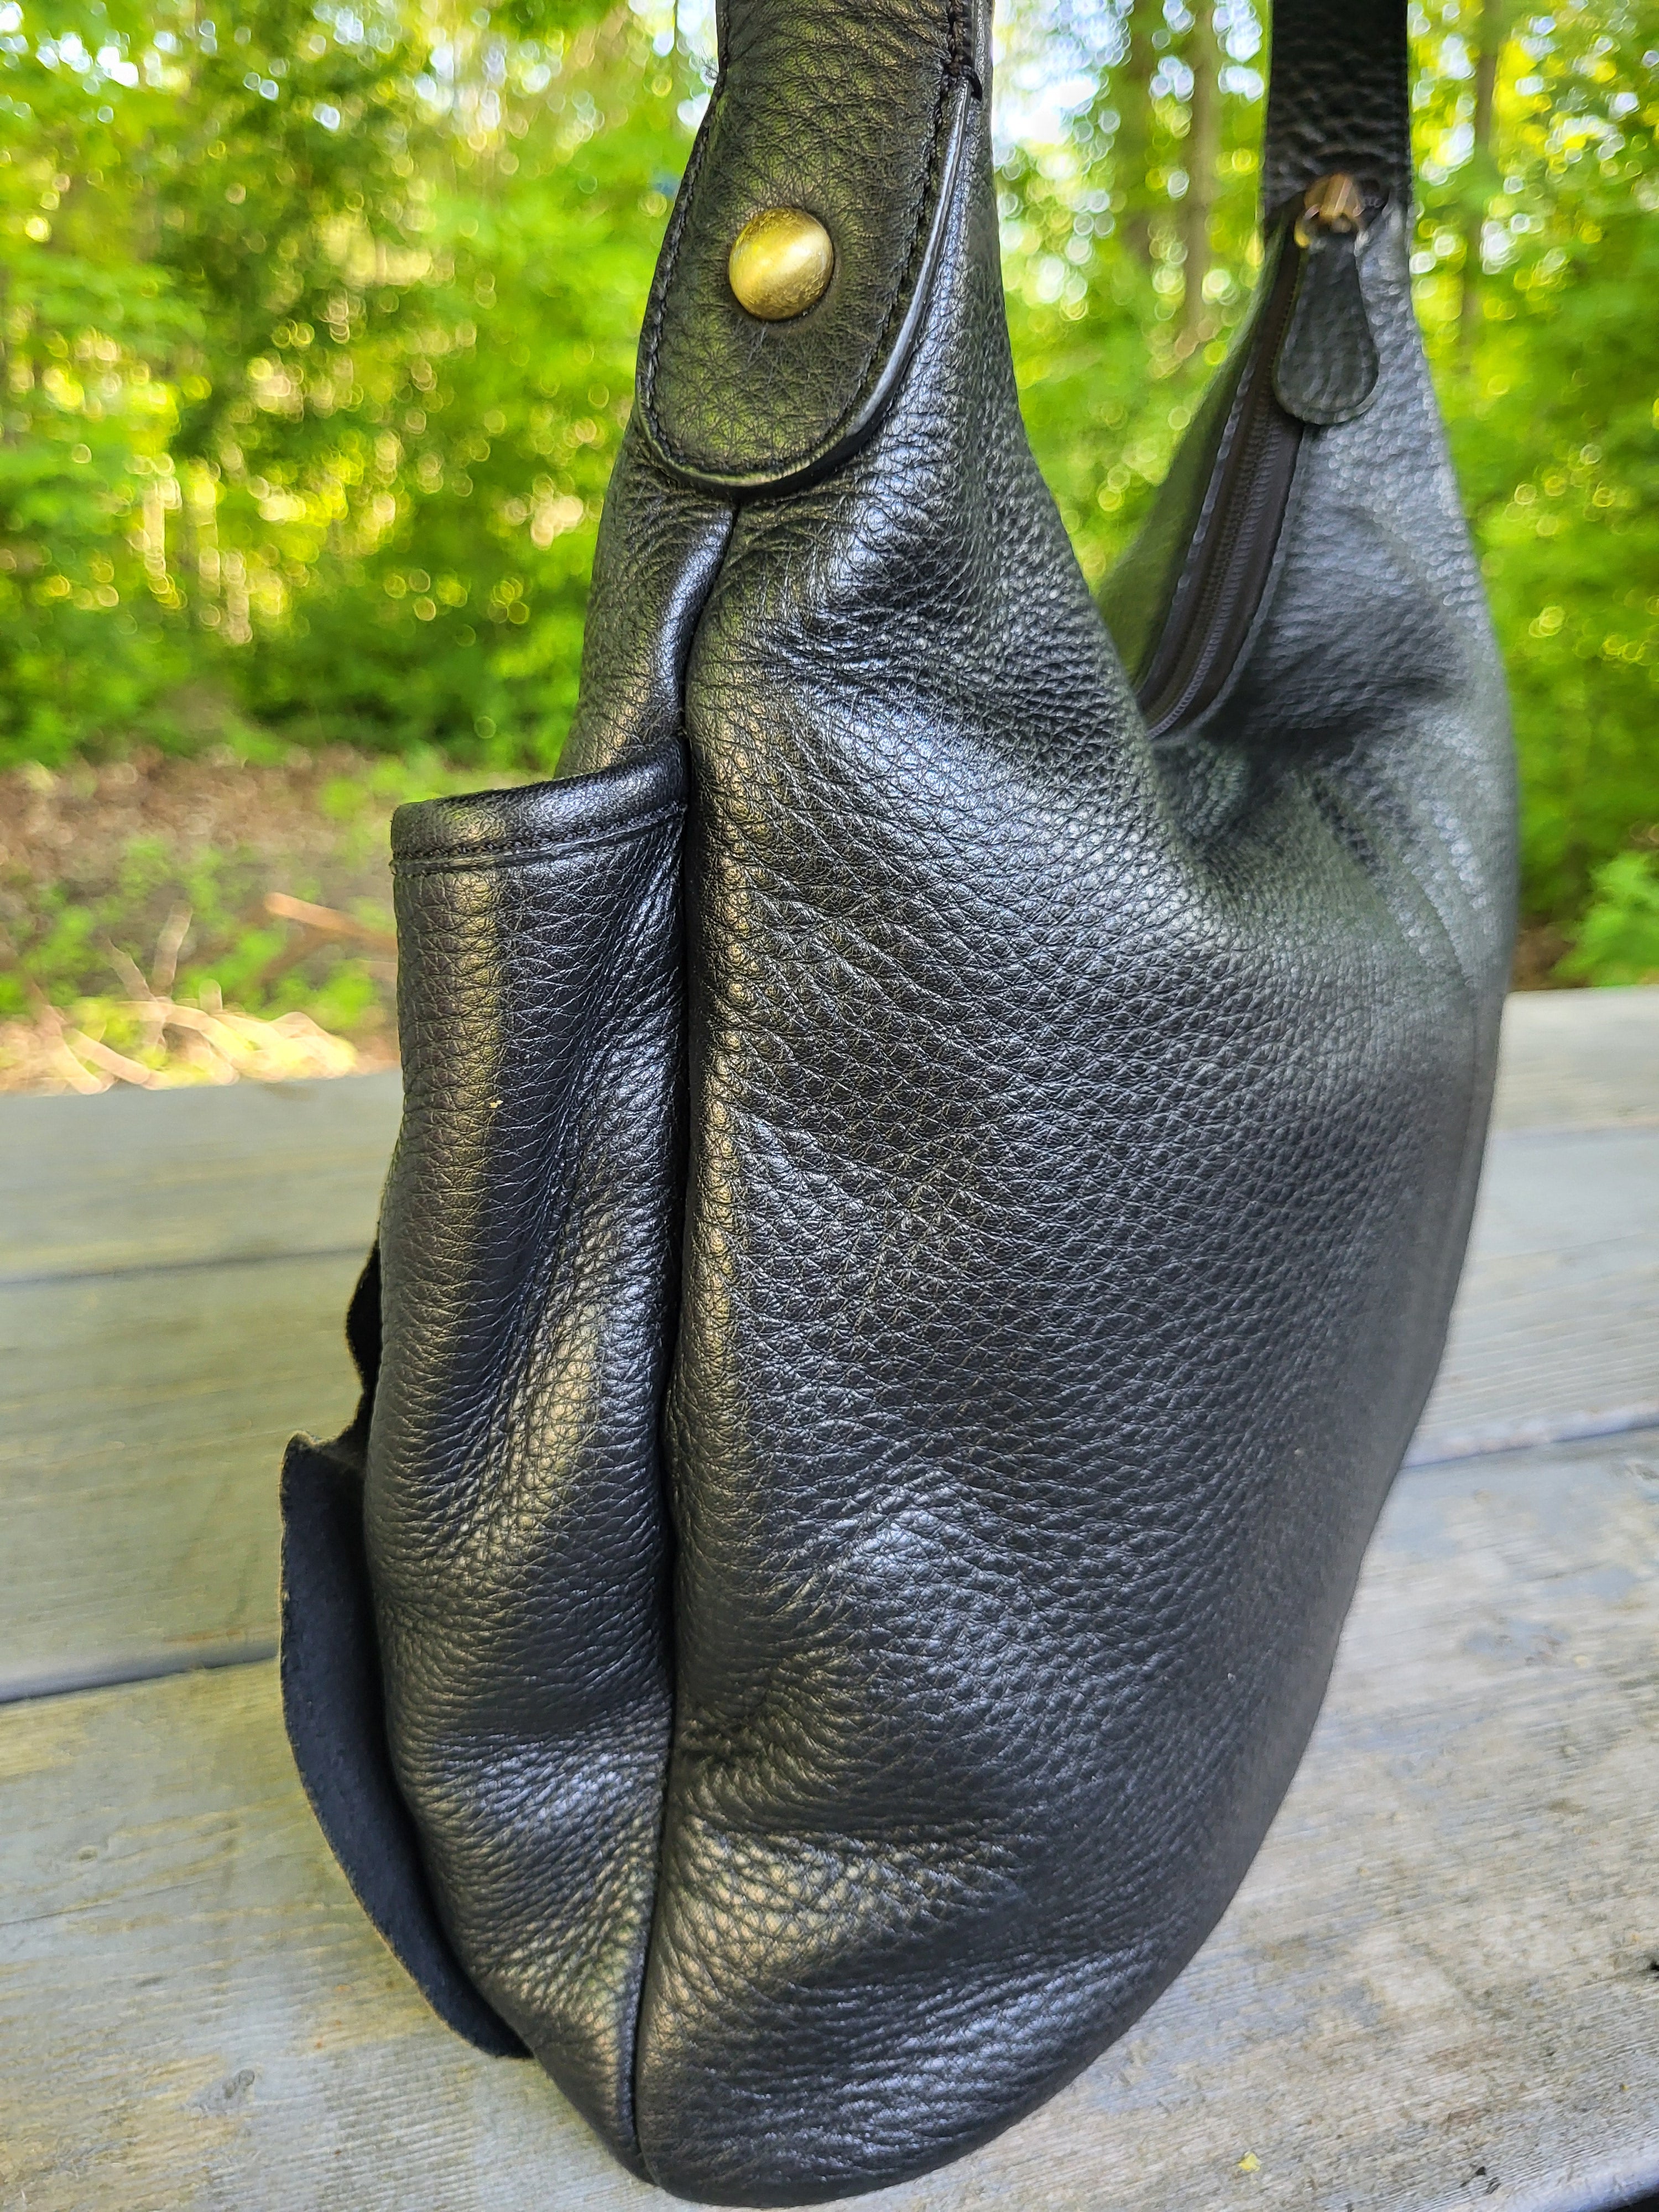 Black Claudia Scala Black Leather Hobo Shoulder Bag